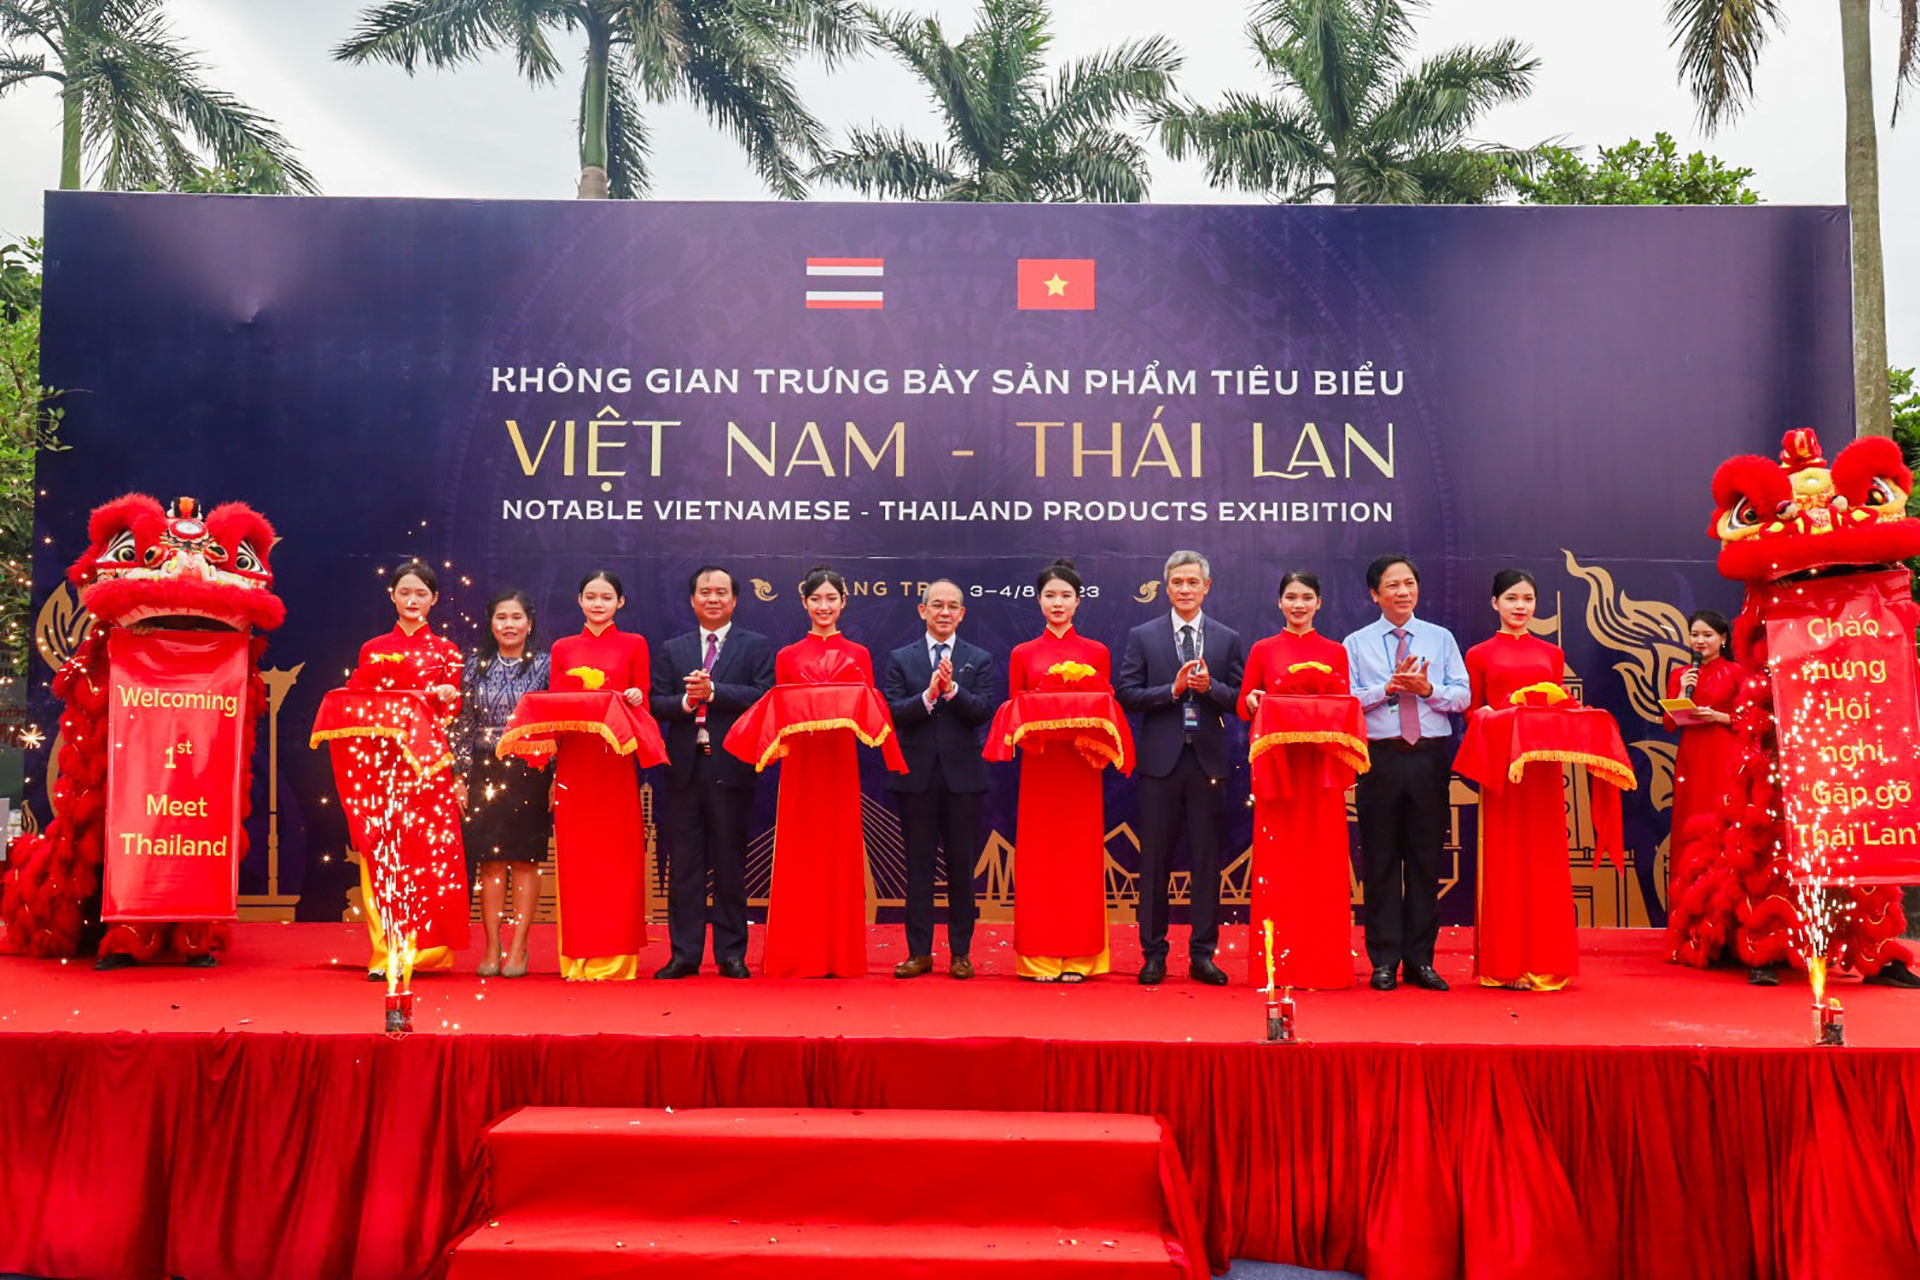 'Meet Thailand' in Quang Tri - Gilimex